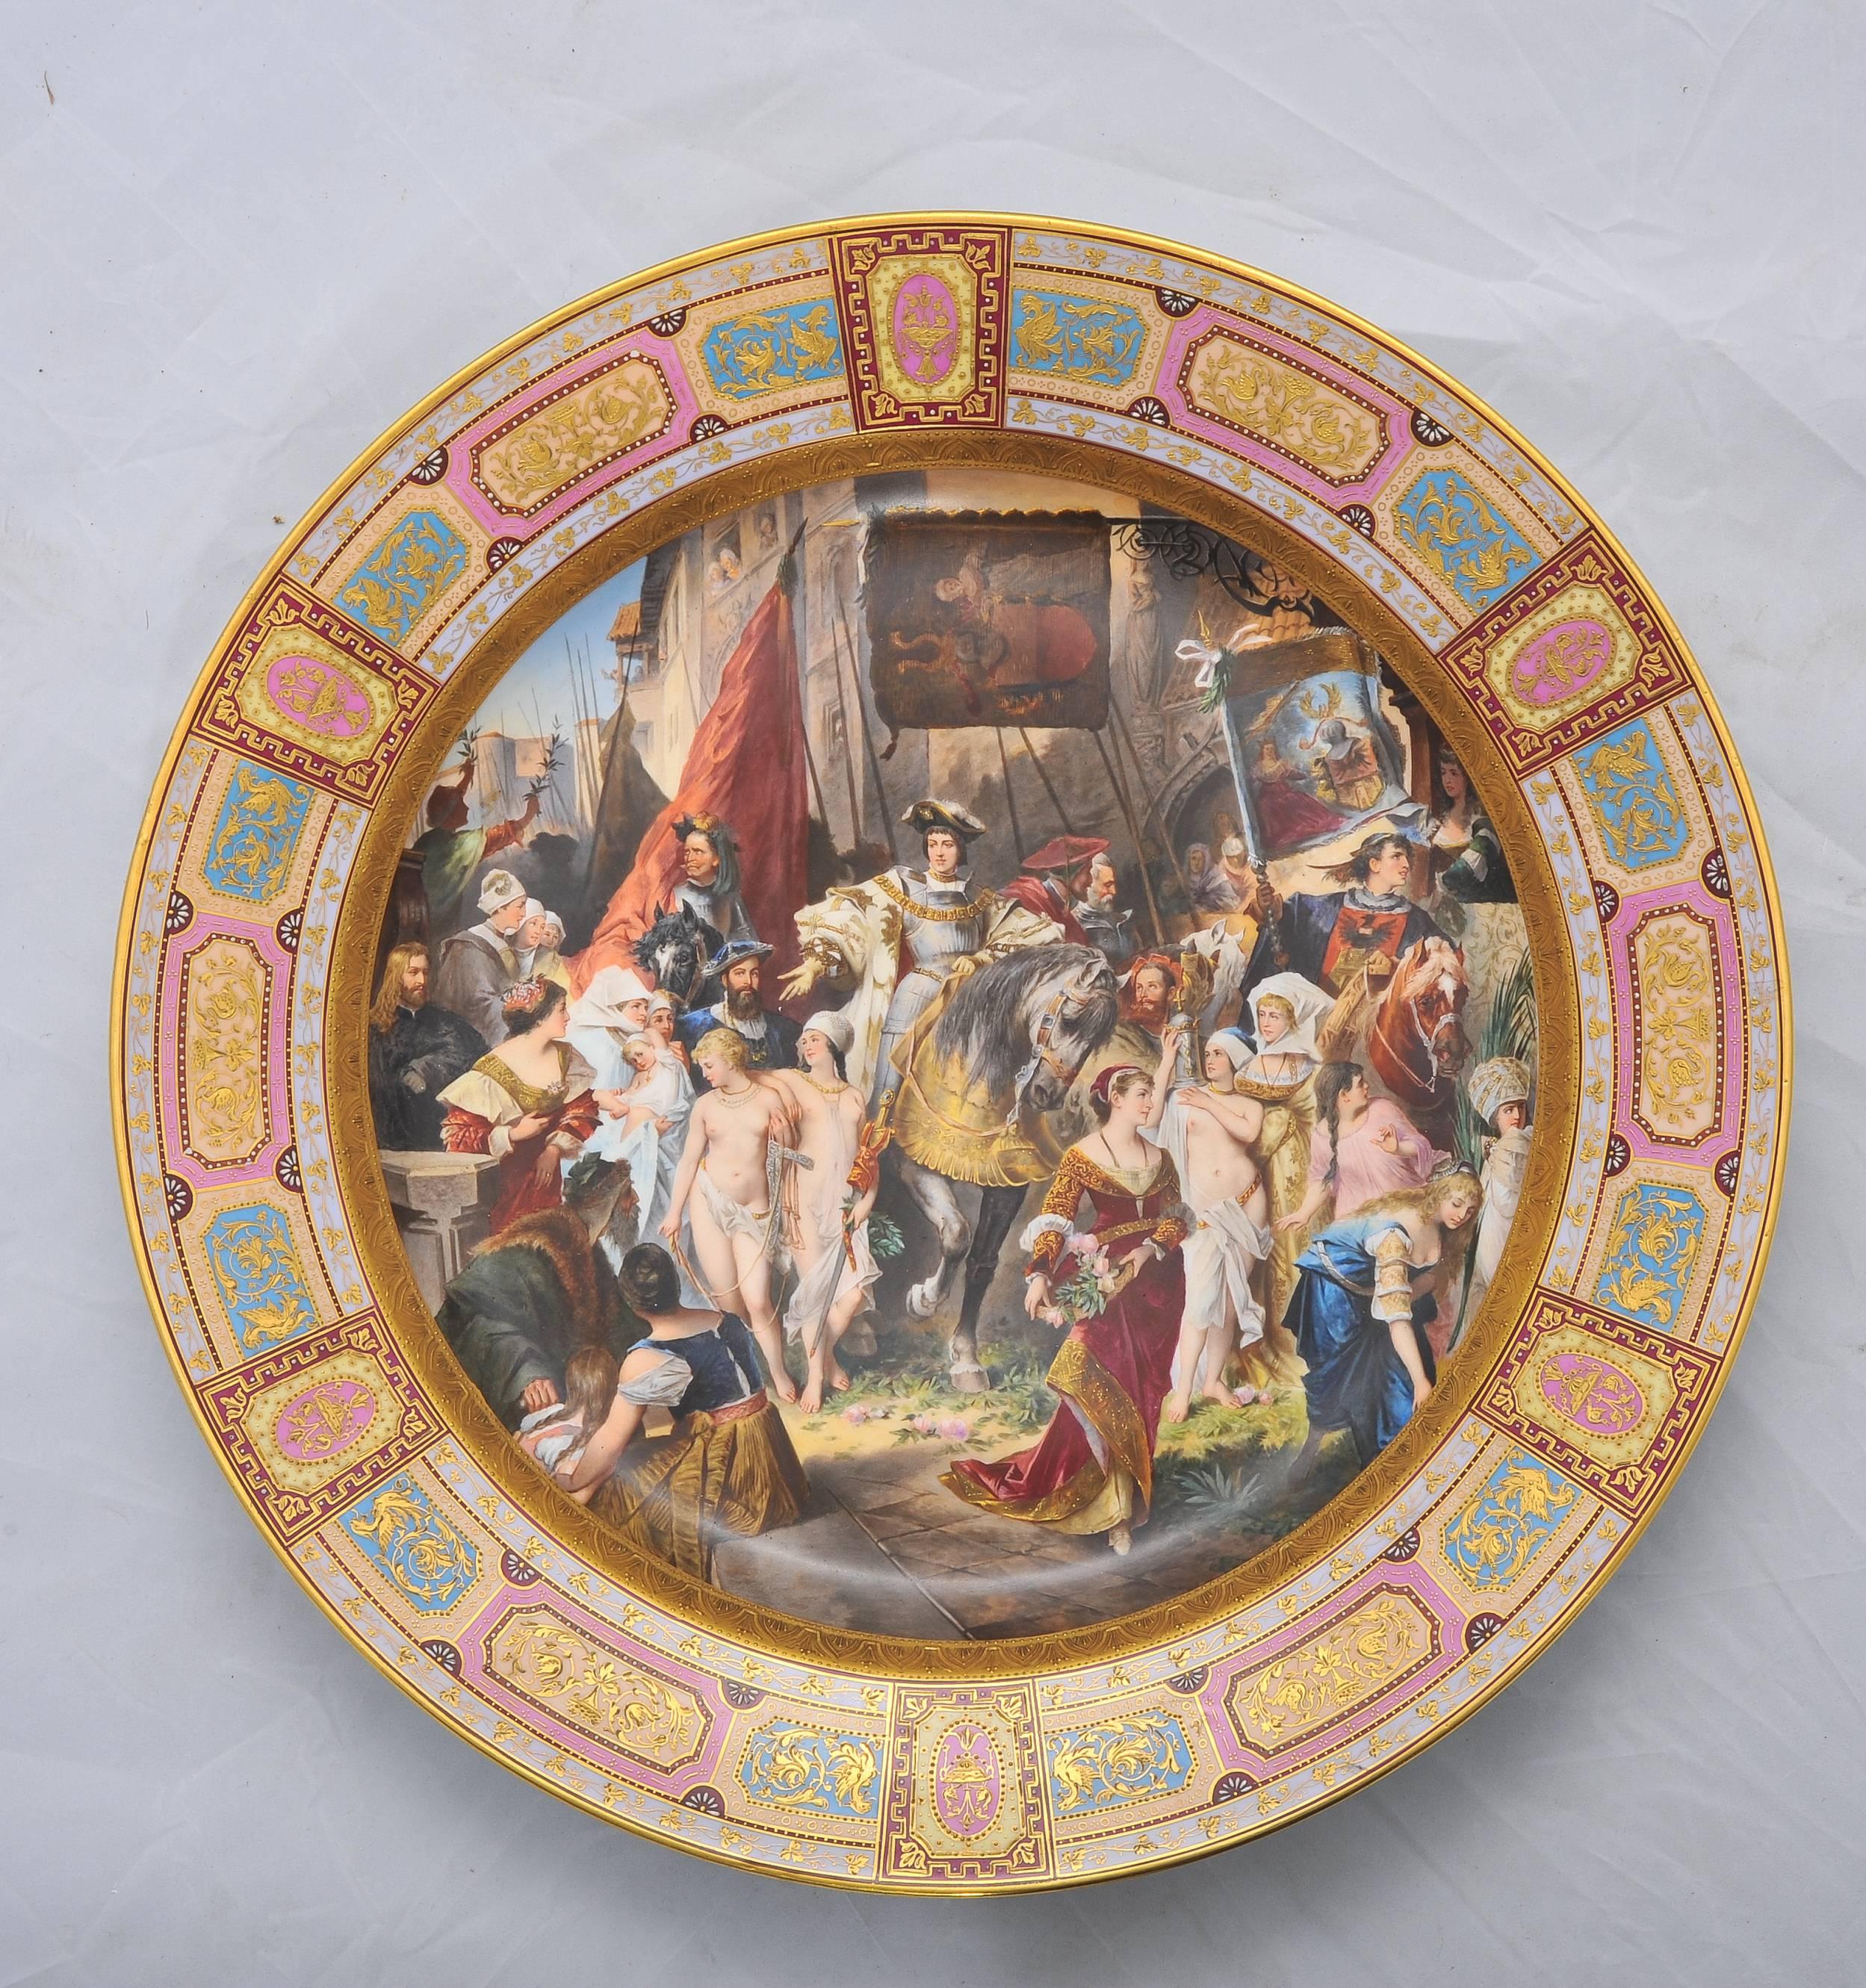 Un grand et impressionnant chargeur en porcelaine de Vienne de qualité supérieure, avec une scène peinte à la main représentant l'empereur Karl V à Anvers.
Marque de la porcelaine de Vienne sur la base.